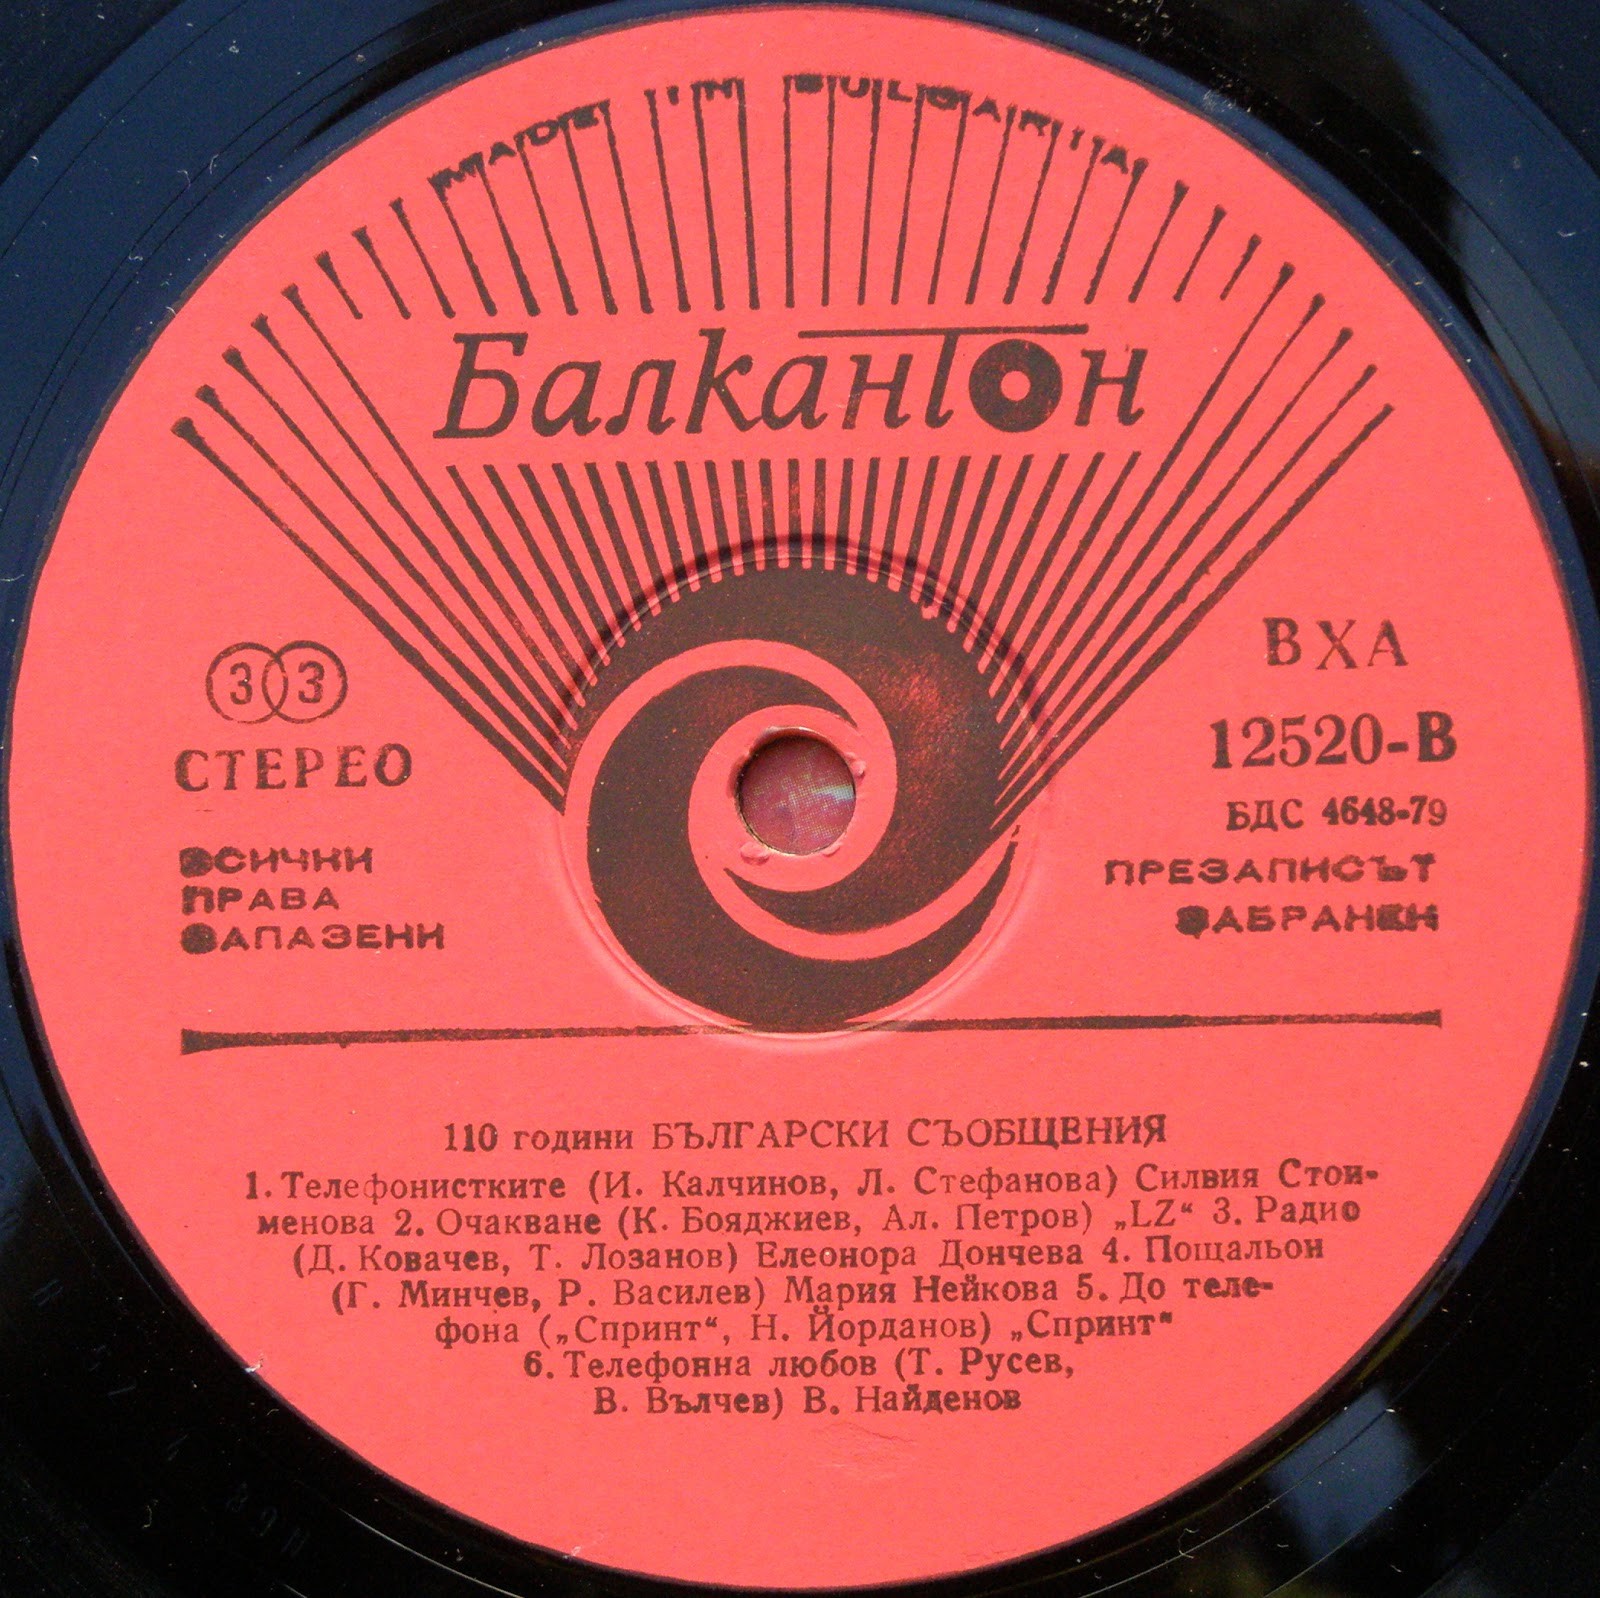 1879-1989 (110 години български съобщения)